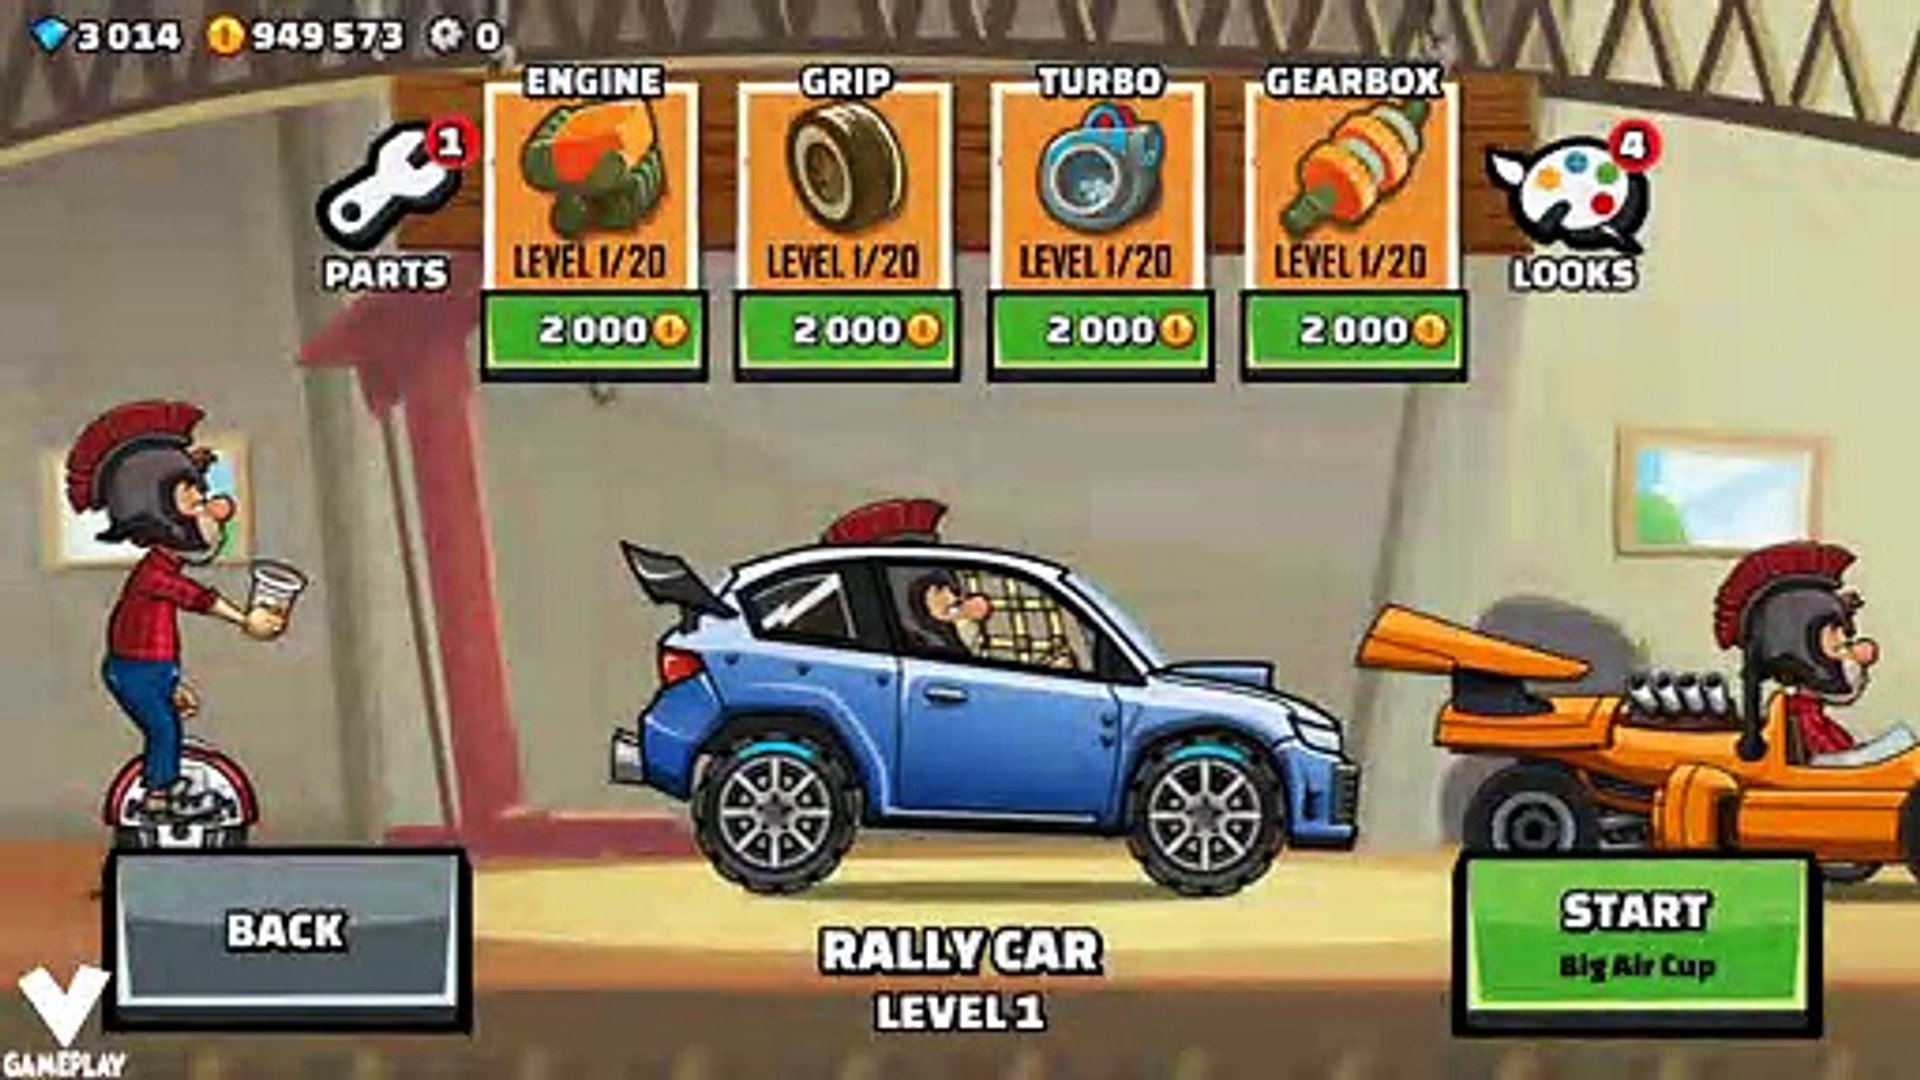 Hill Climb Racing 2 - All Cars Unlocked + Race with each car ! MOD